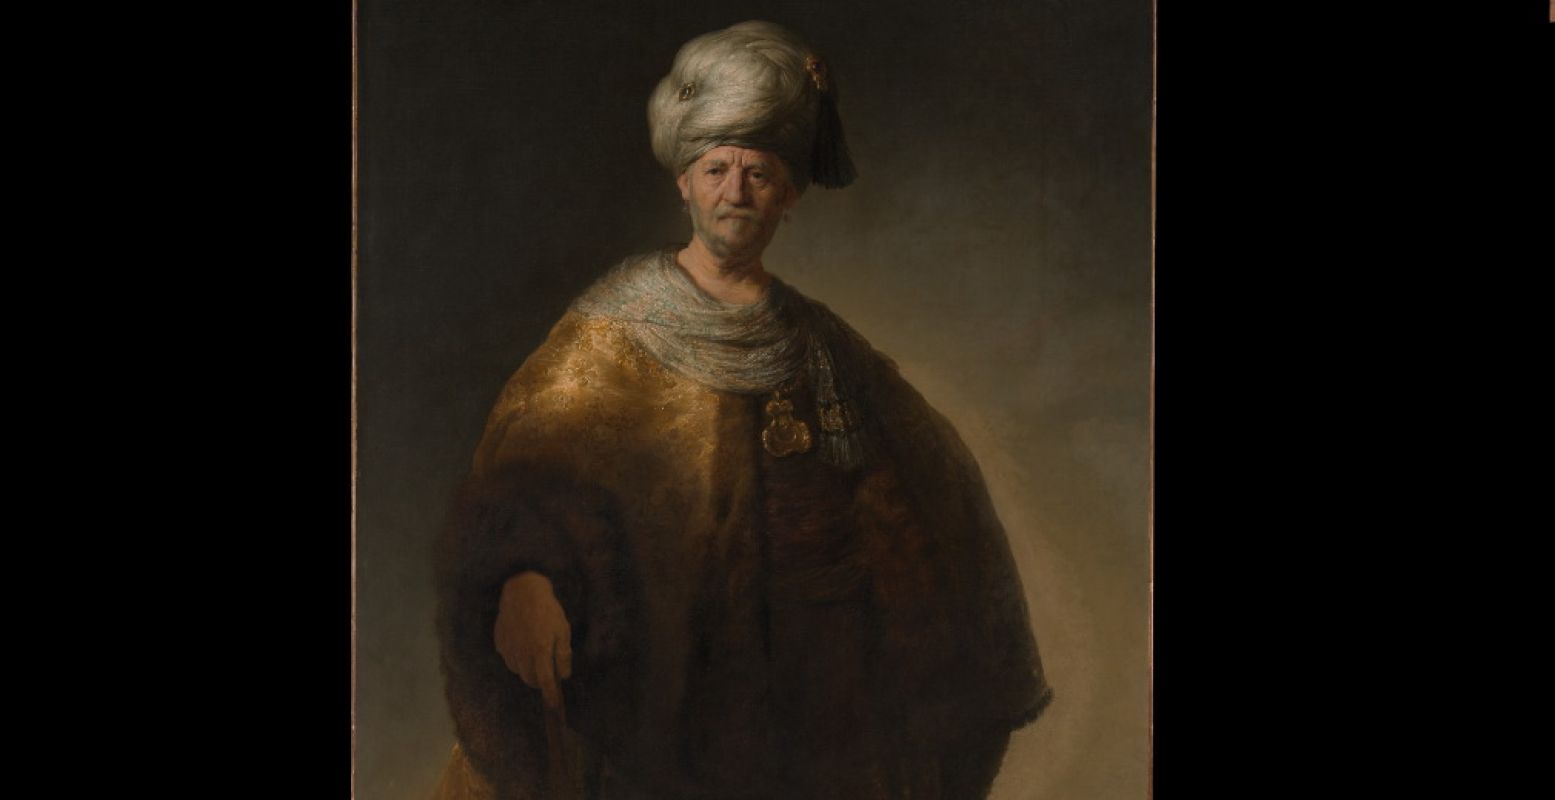  Man in oosters kostuum ('De nobele slaaf')  1632, Rembrandt. Legaat van William K. Vanderbilt, 1920. The Metropolitan Museum of Art, New York. Foto: Museum De Lakenhal